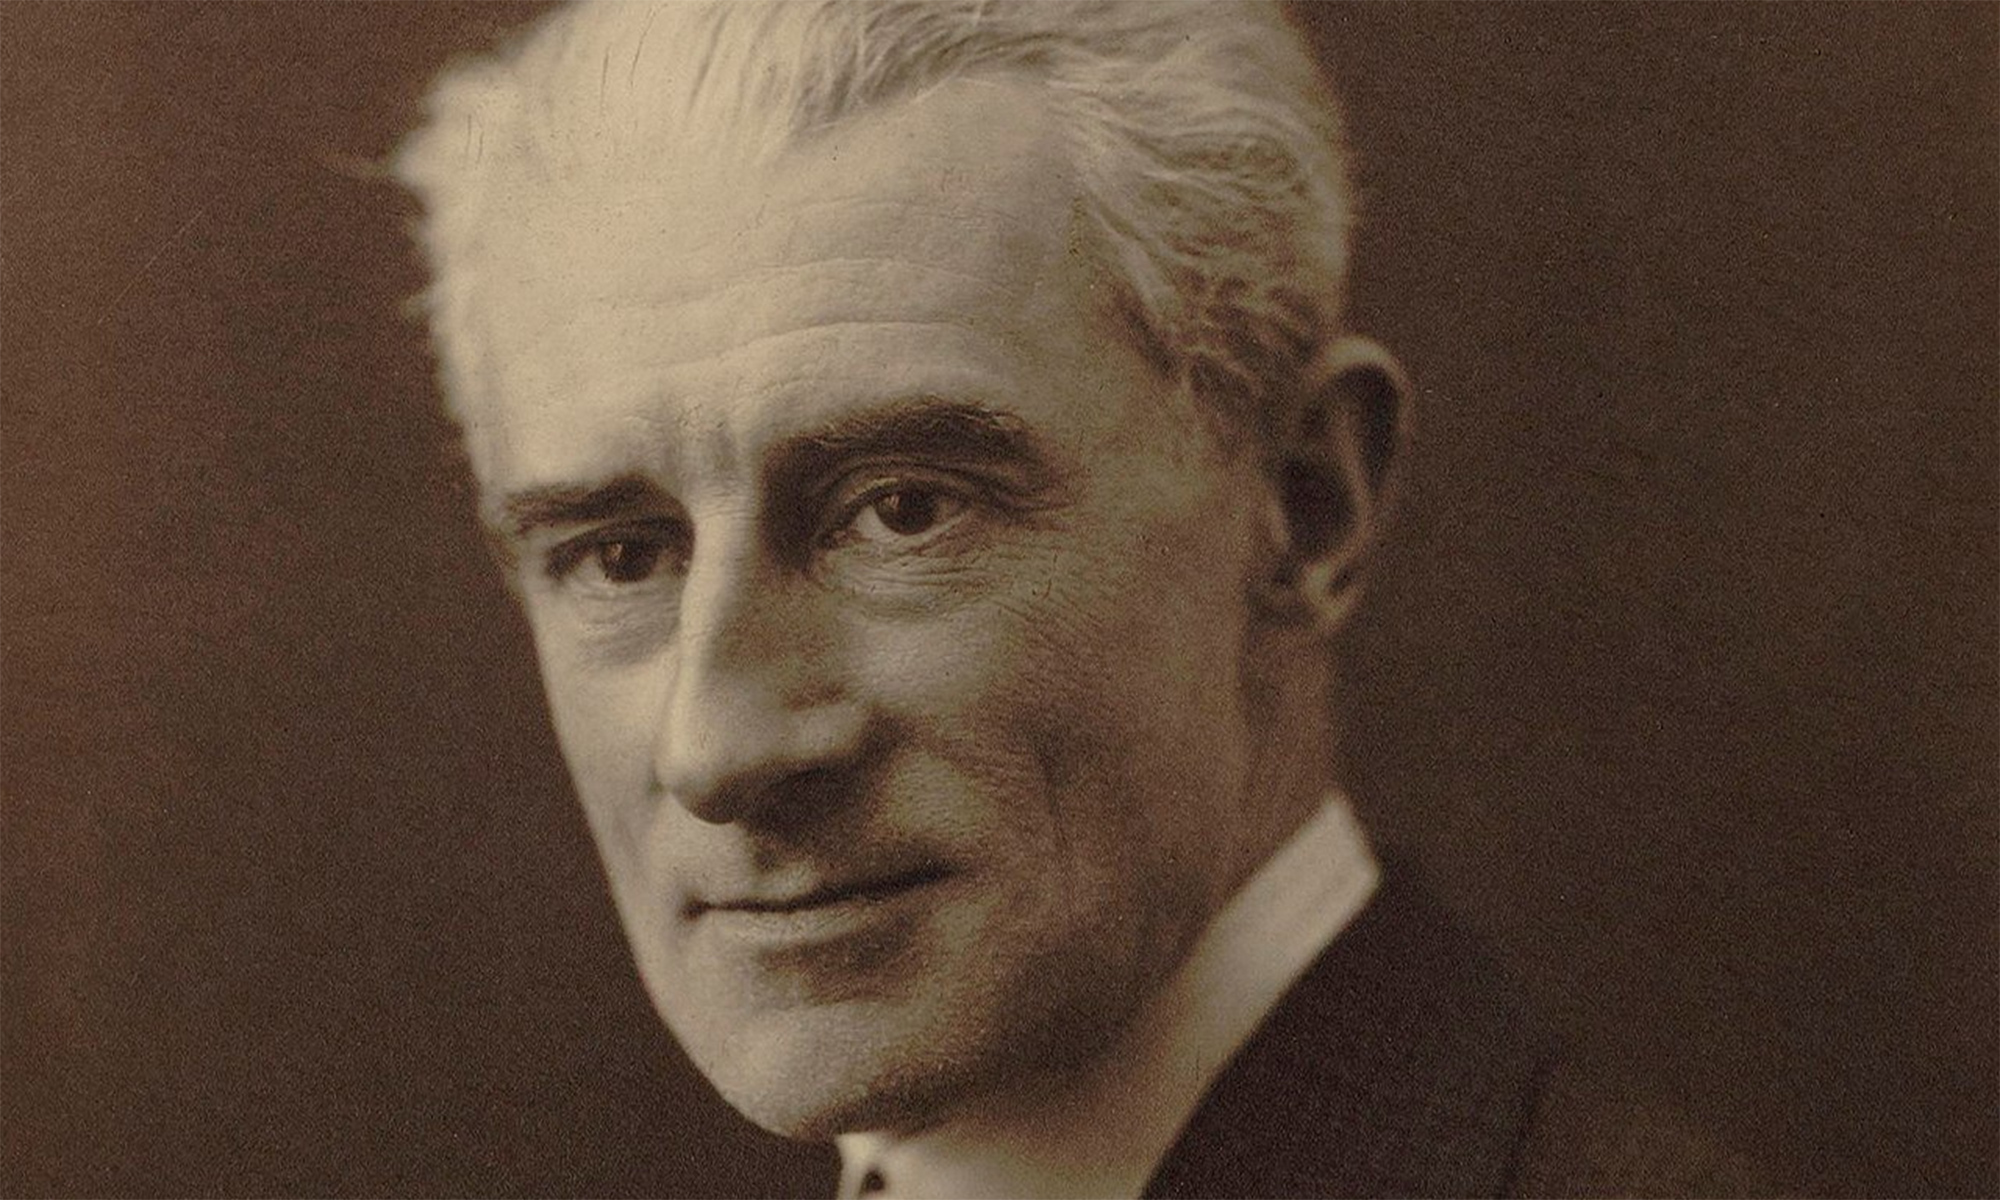 Рав ел. Морис Равель (1875–1937). Maurice Ravel. Равель портрет. Жозе́ф Мори́с Раве́ль.